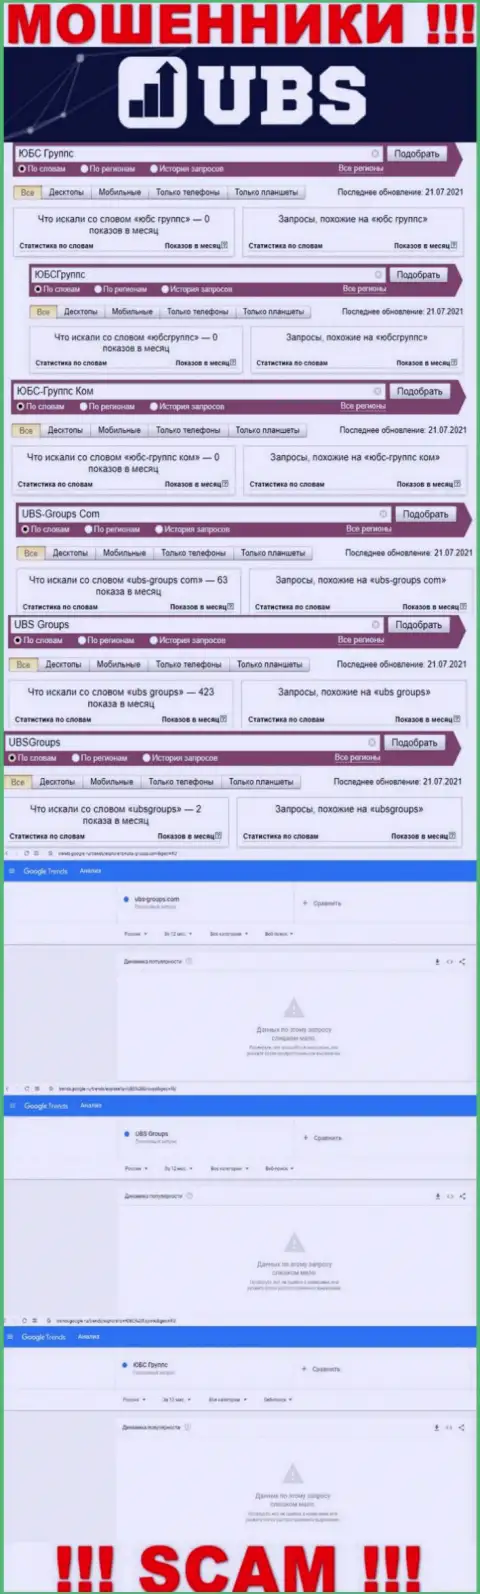 Скриншот статистических сведений онлайн-запросов по мошеннической организации ЮБС-Группс Ком